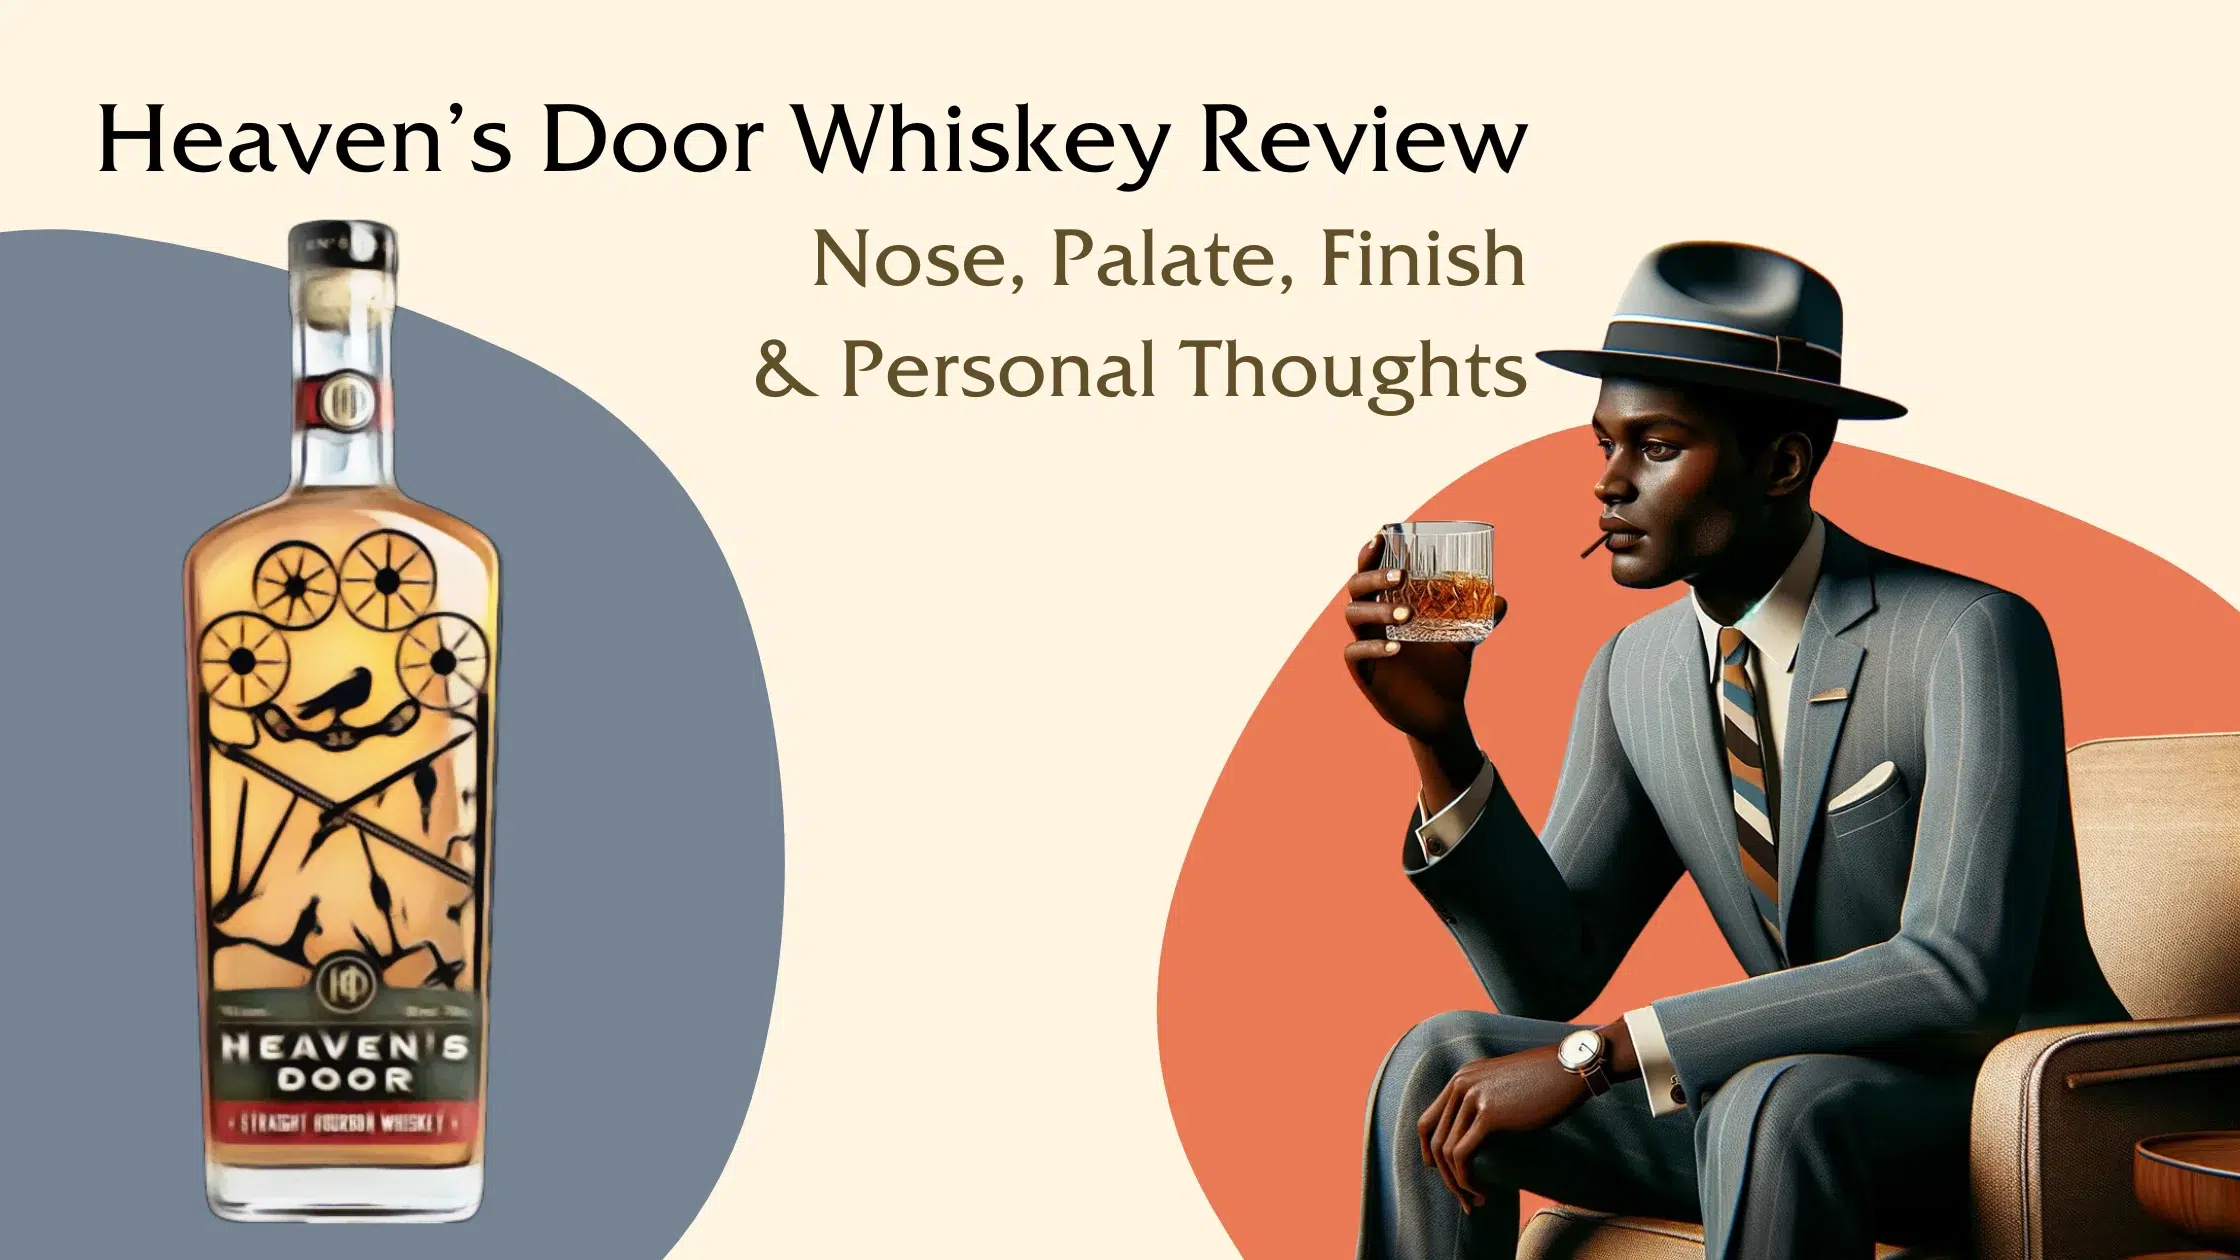 Man in suit reviewing Heaven's Door Whiskey.